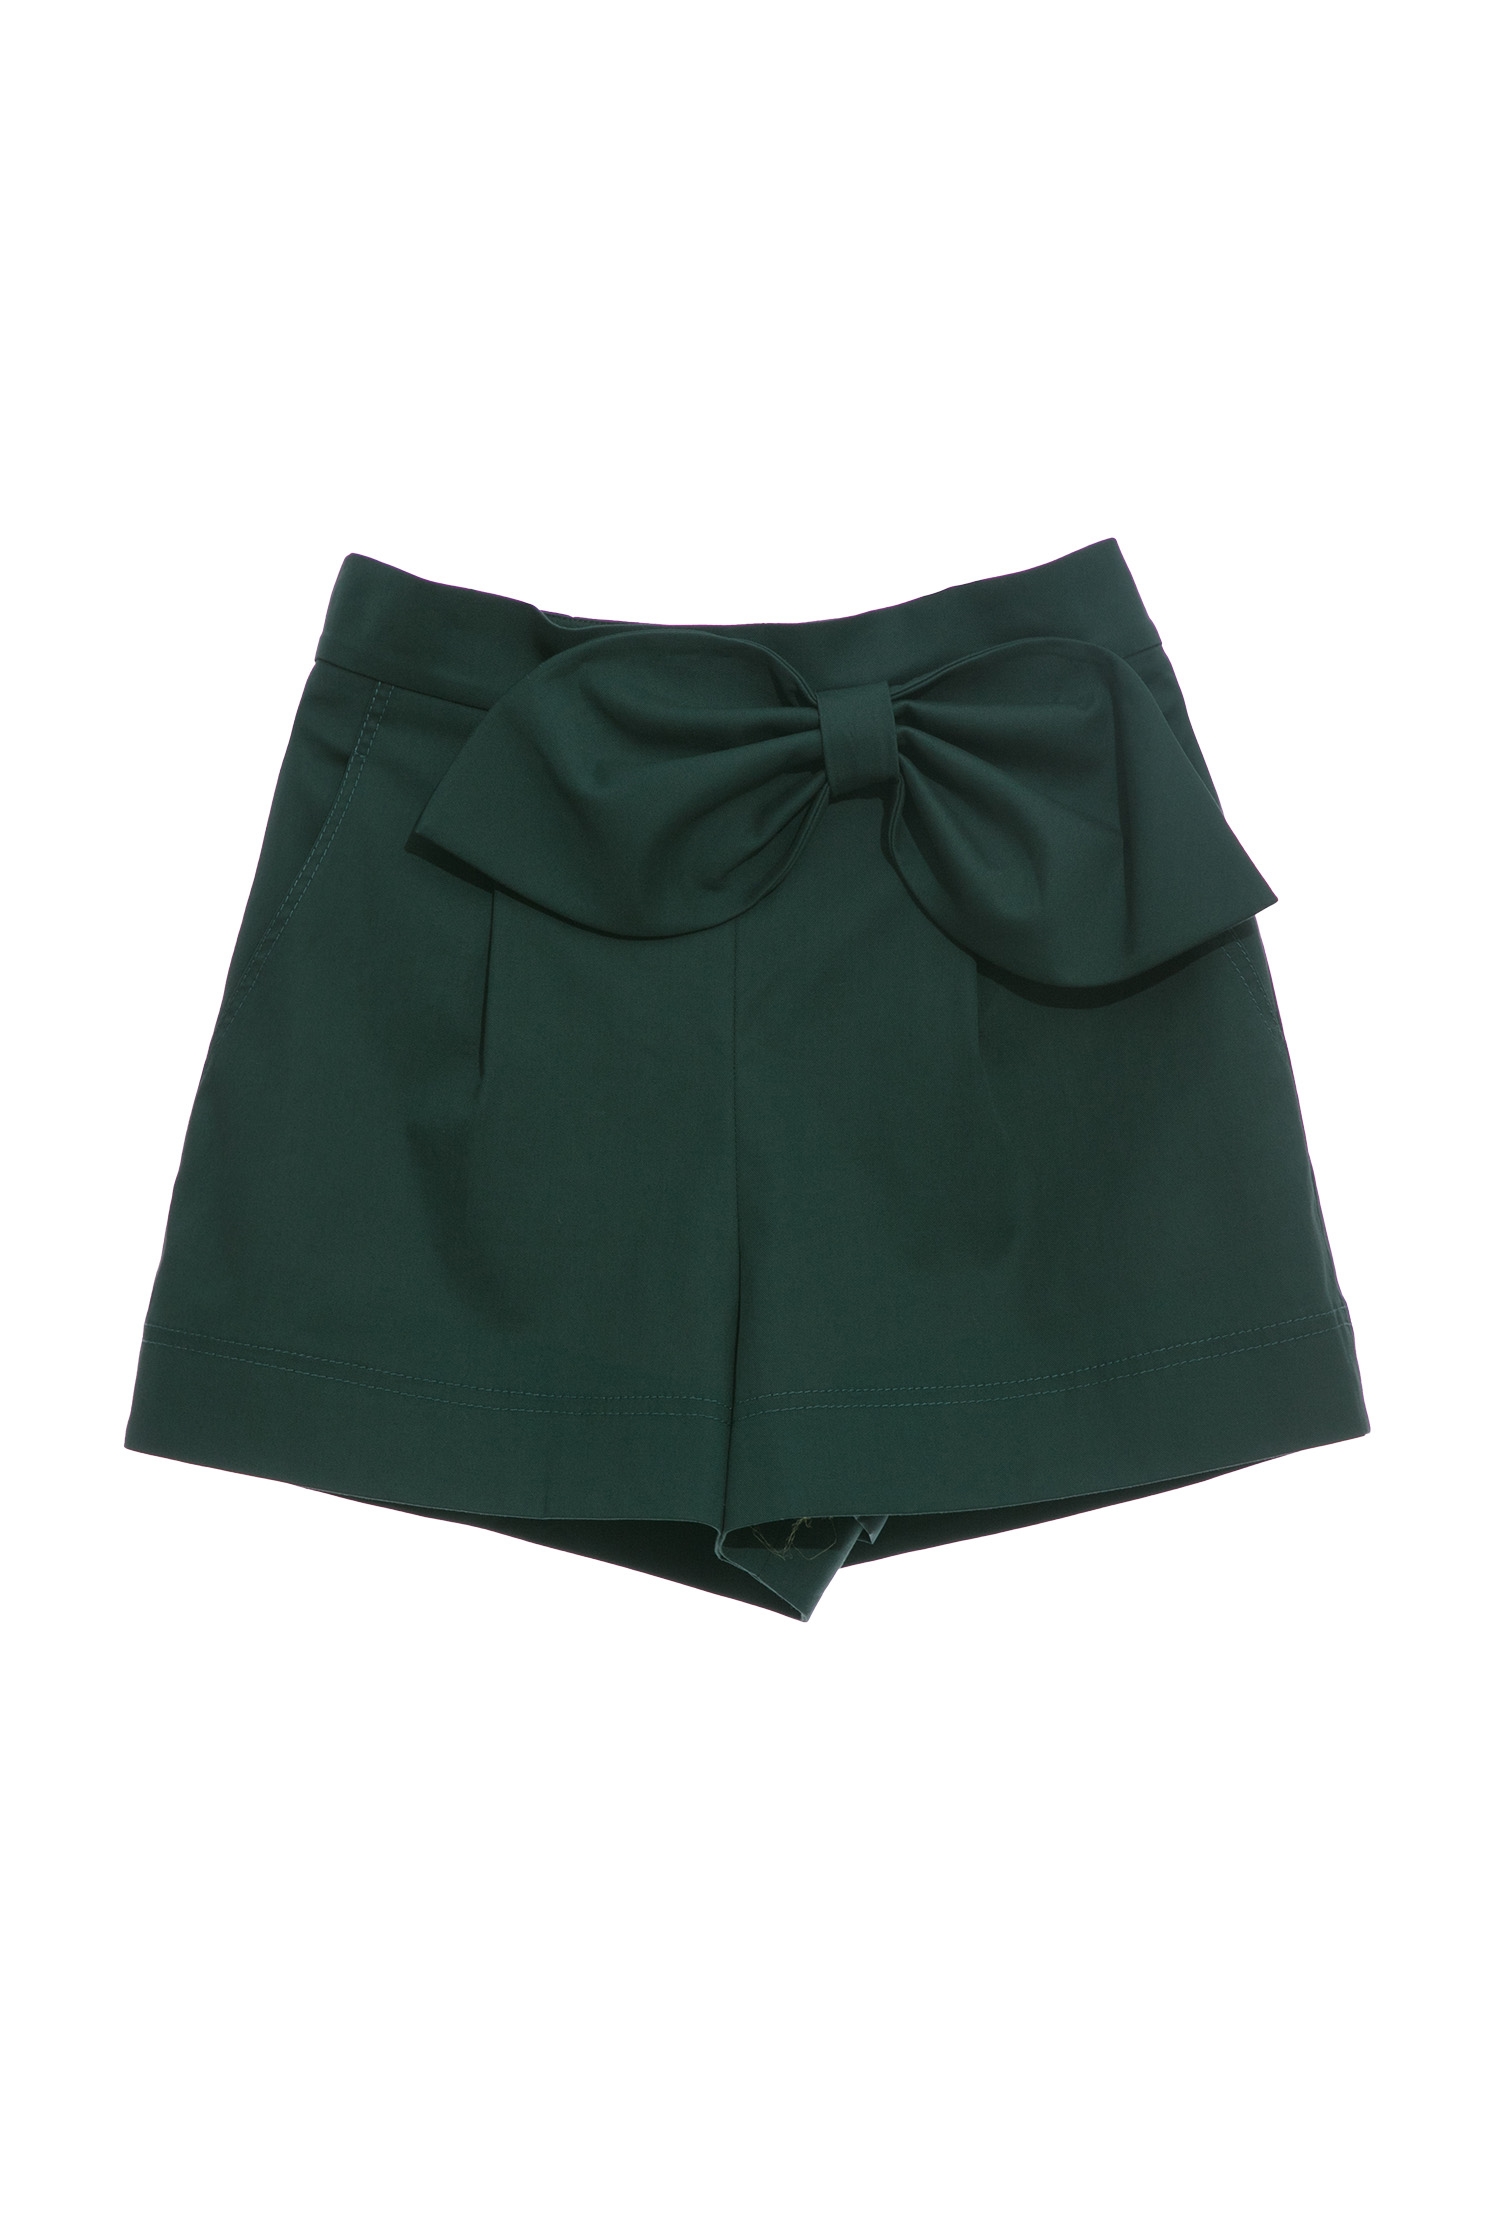 銅綠色短褲裙,綠色 蝴蝶結,綠色 褲裙,無腰頭 蝴蝶結銅綠色短褲裙,春夏穿搭,短褲,蝴蝶結,褲裙